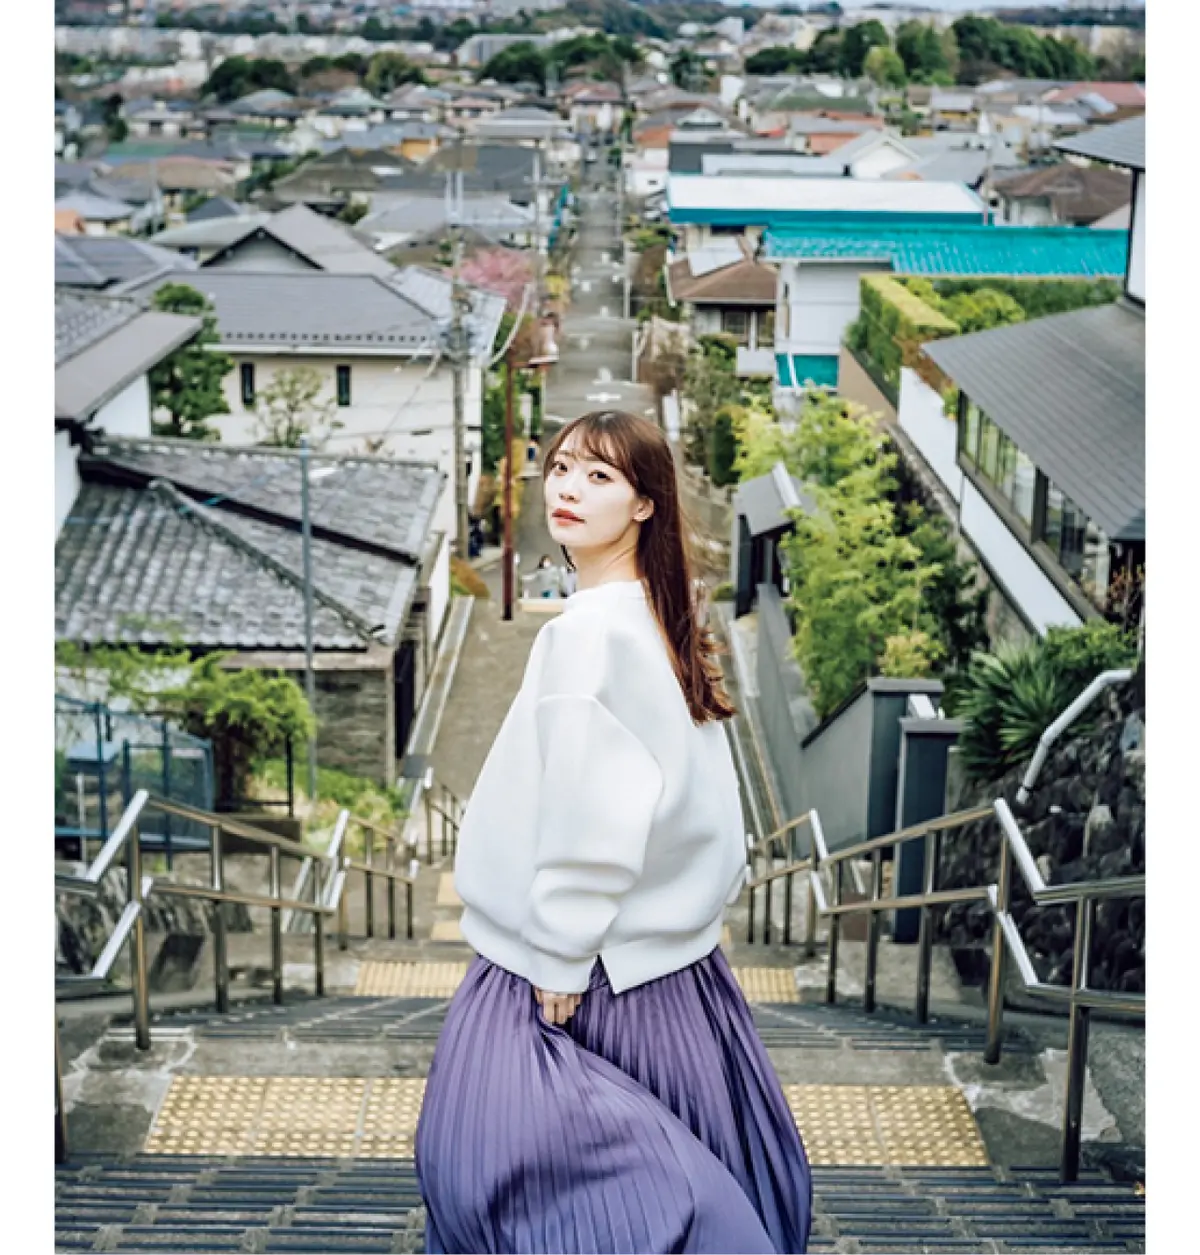 『耳をすまれば』のモデルの東京都・聖蹟桜ヶ丘の階段を歩く女性